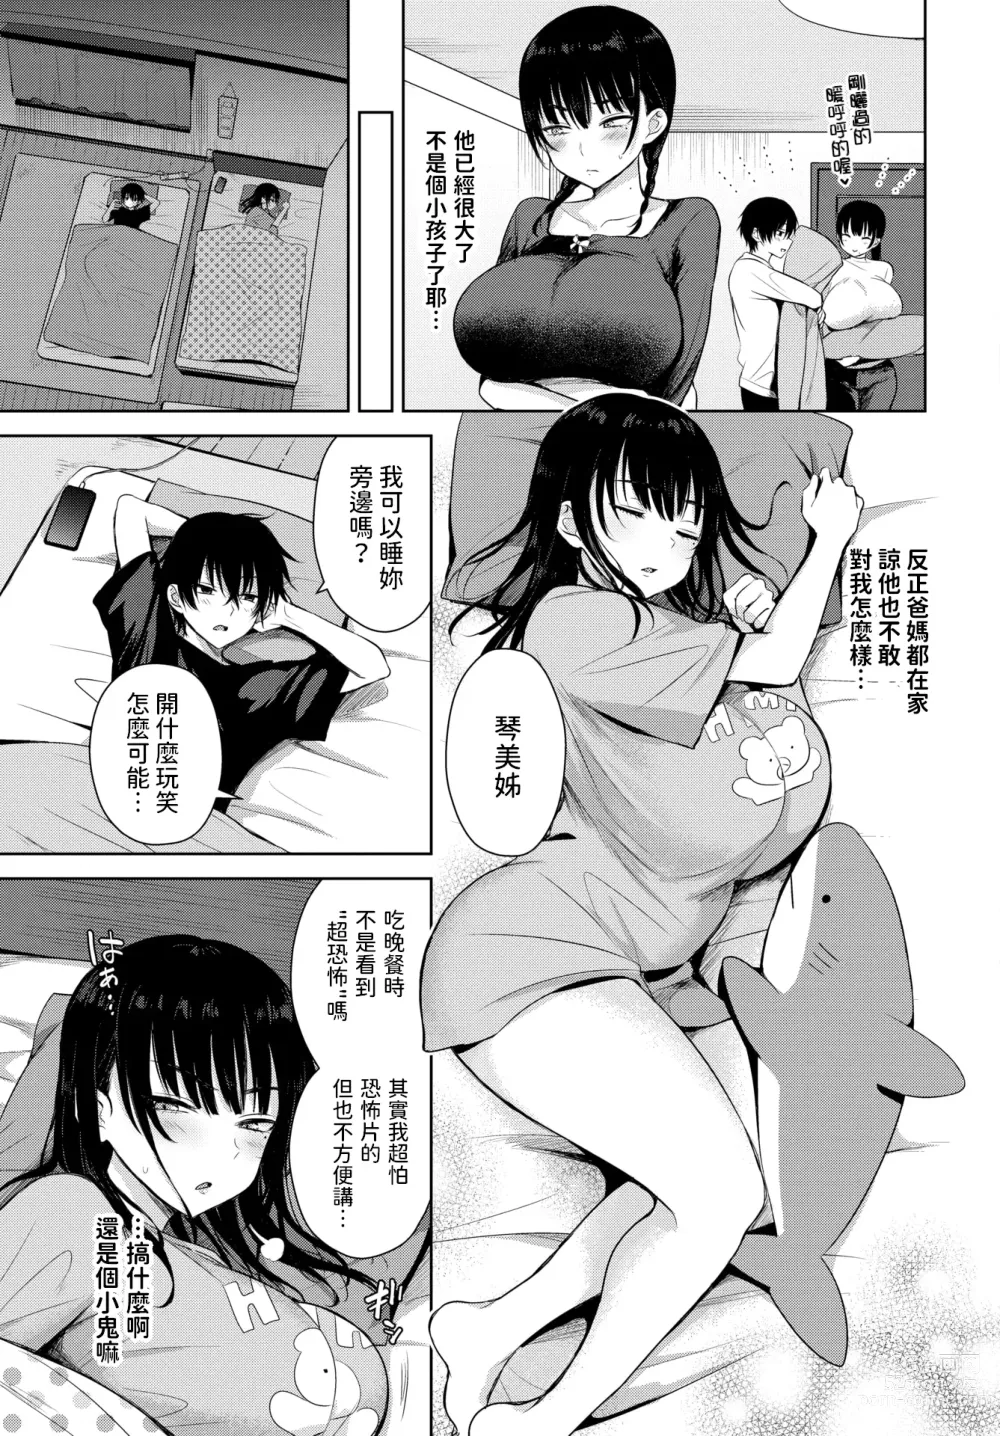 Page 3 of manga 7days